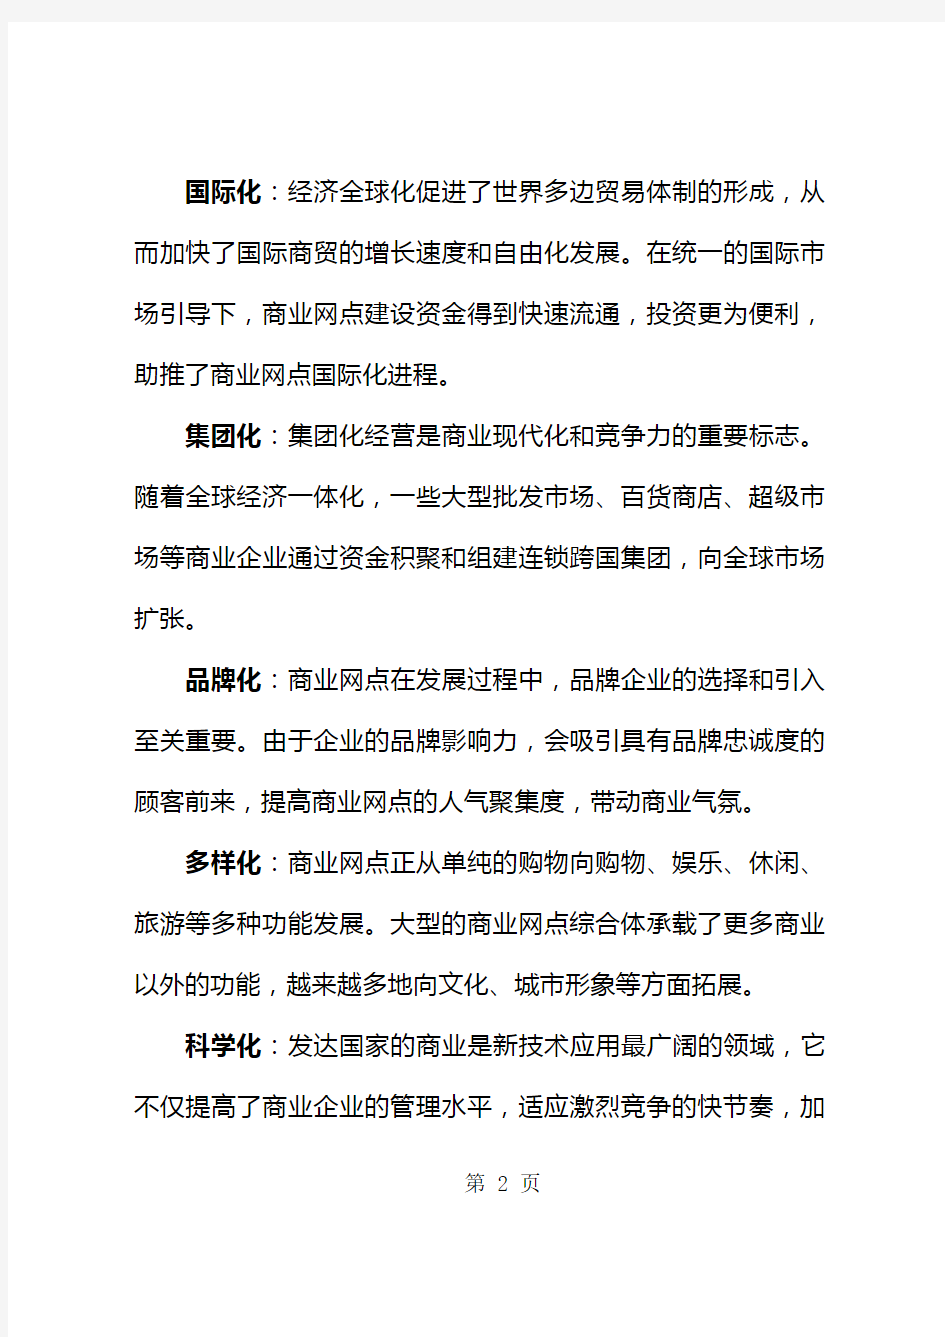 2019年杭州市商业网点规划报告(40页)43页word文档